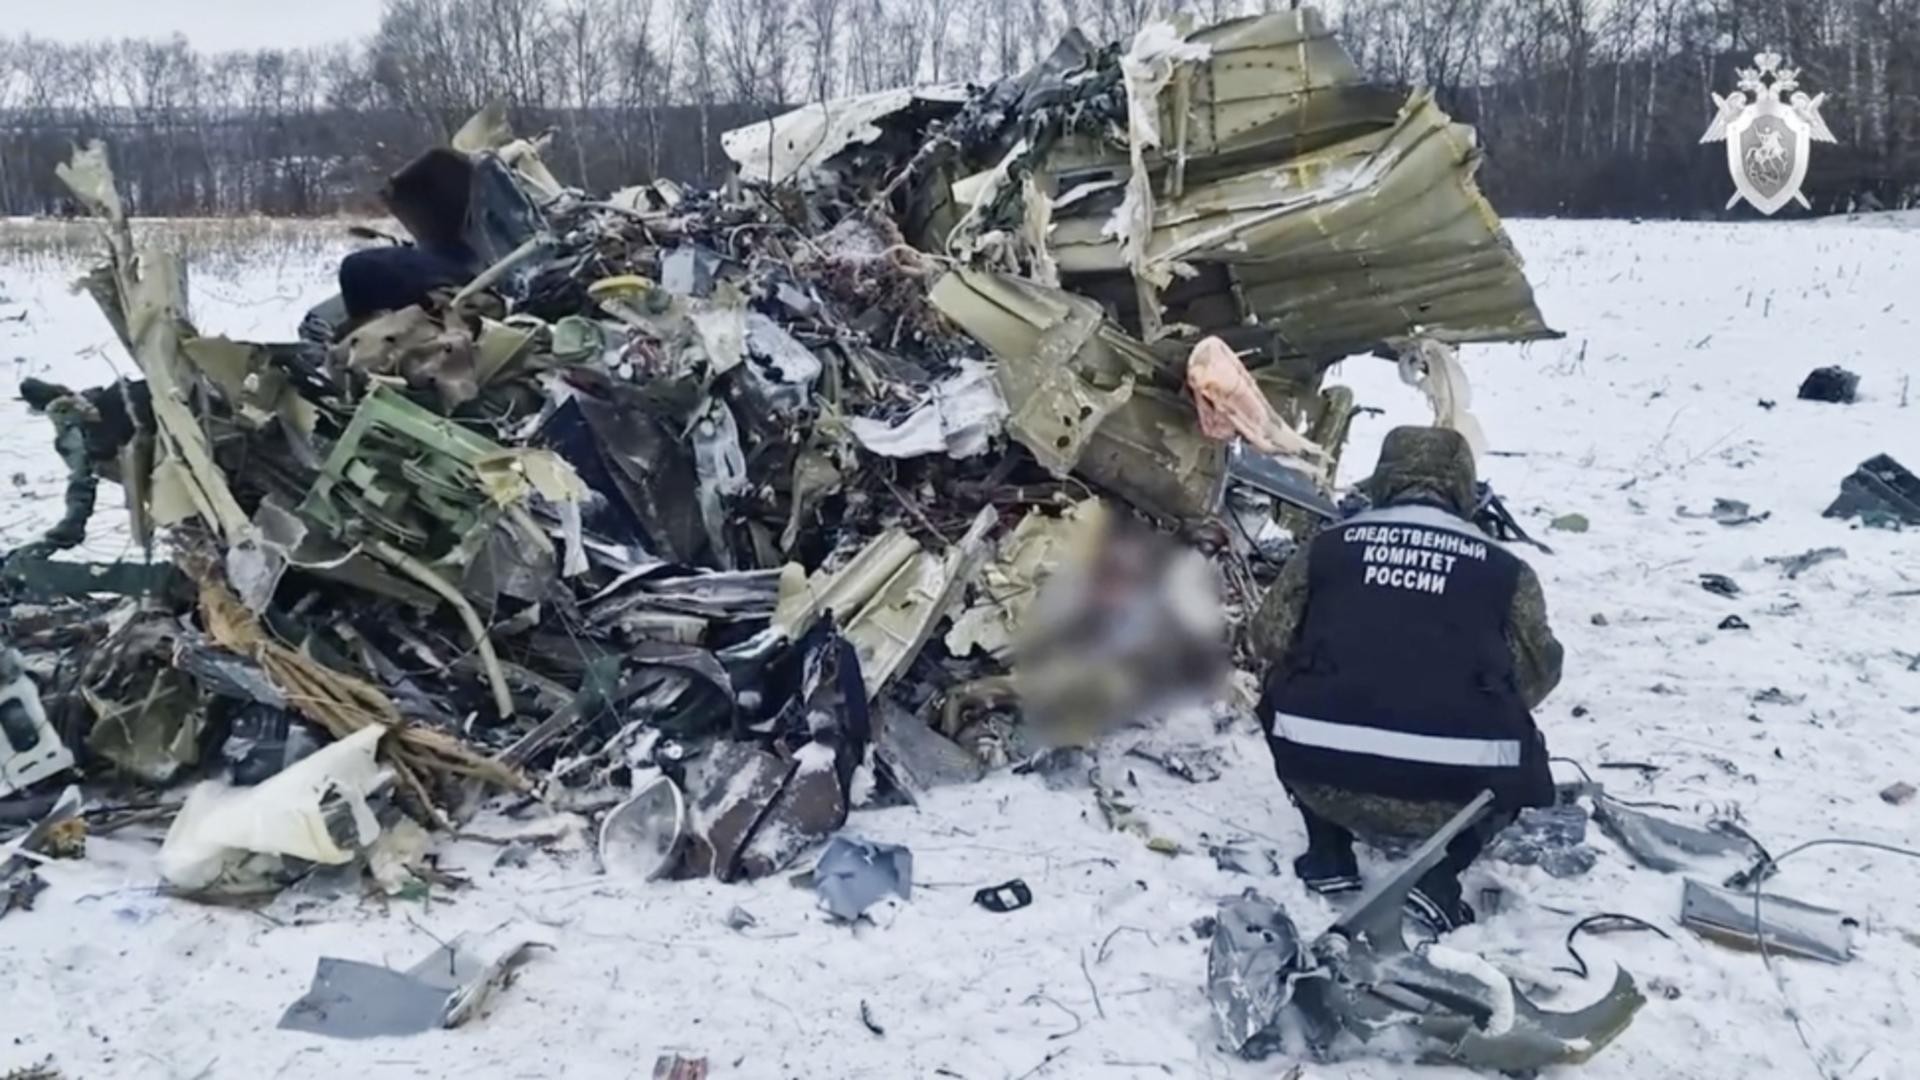 O parte a rămășițelor aeronavei. Rusia susține că 65 de oameni ar fi murit (Profimedia)